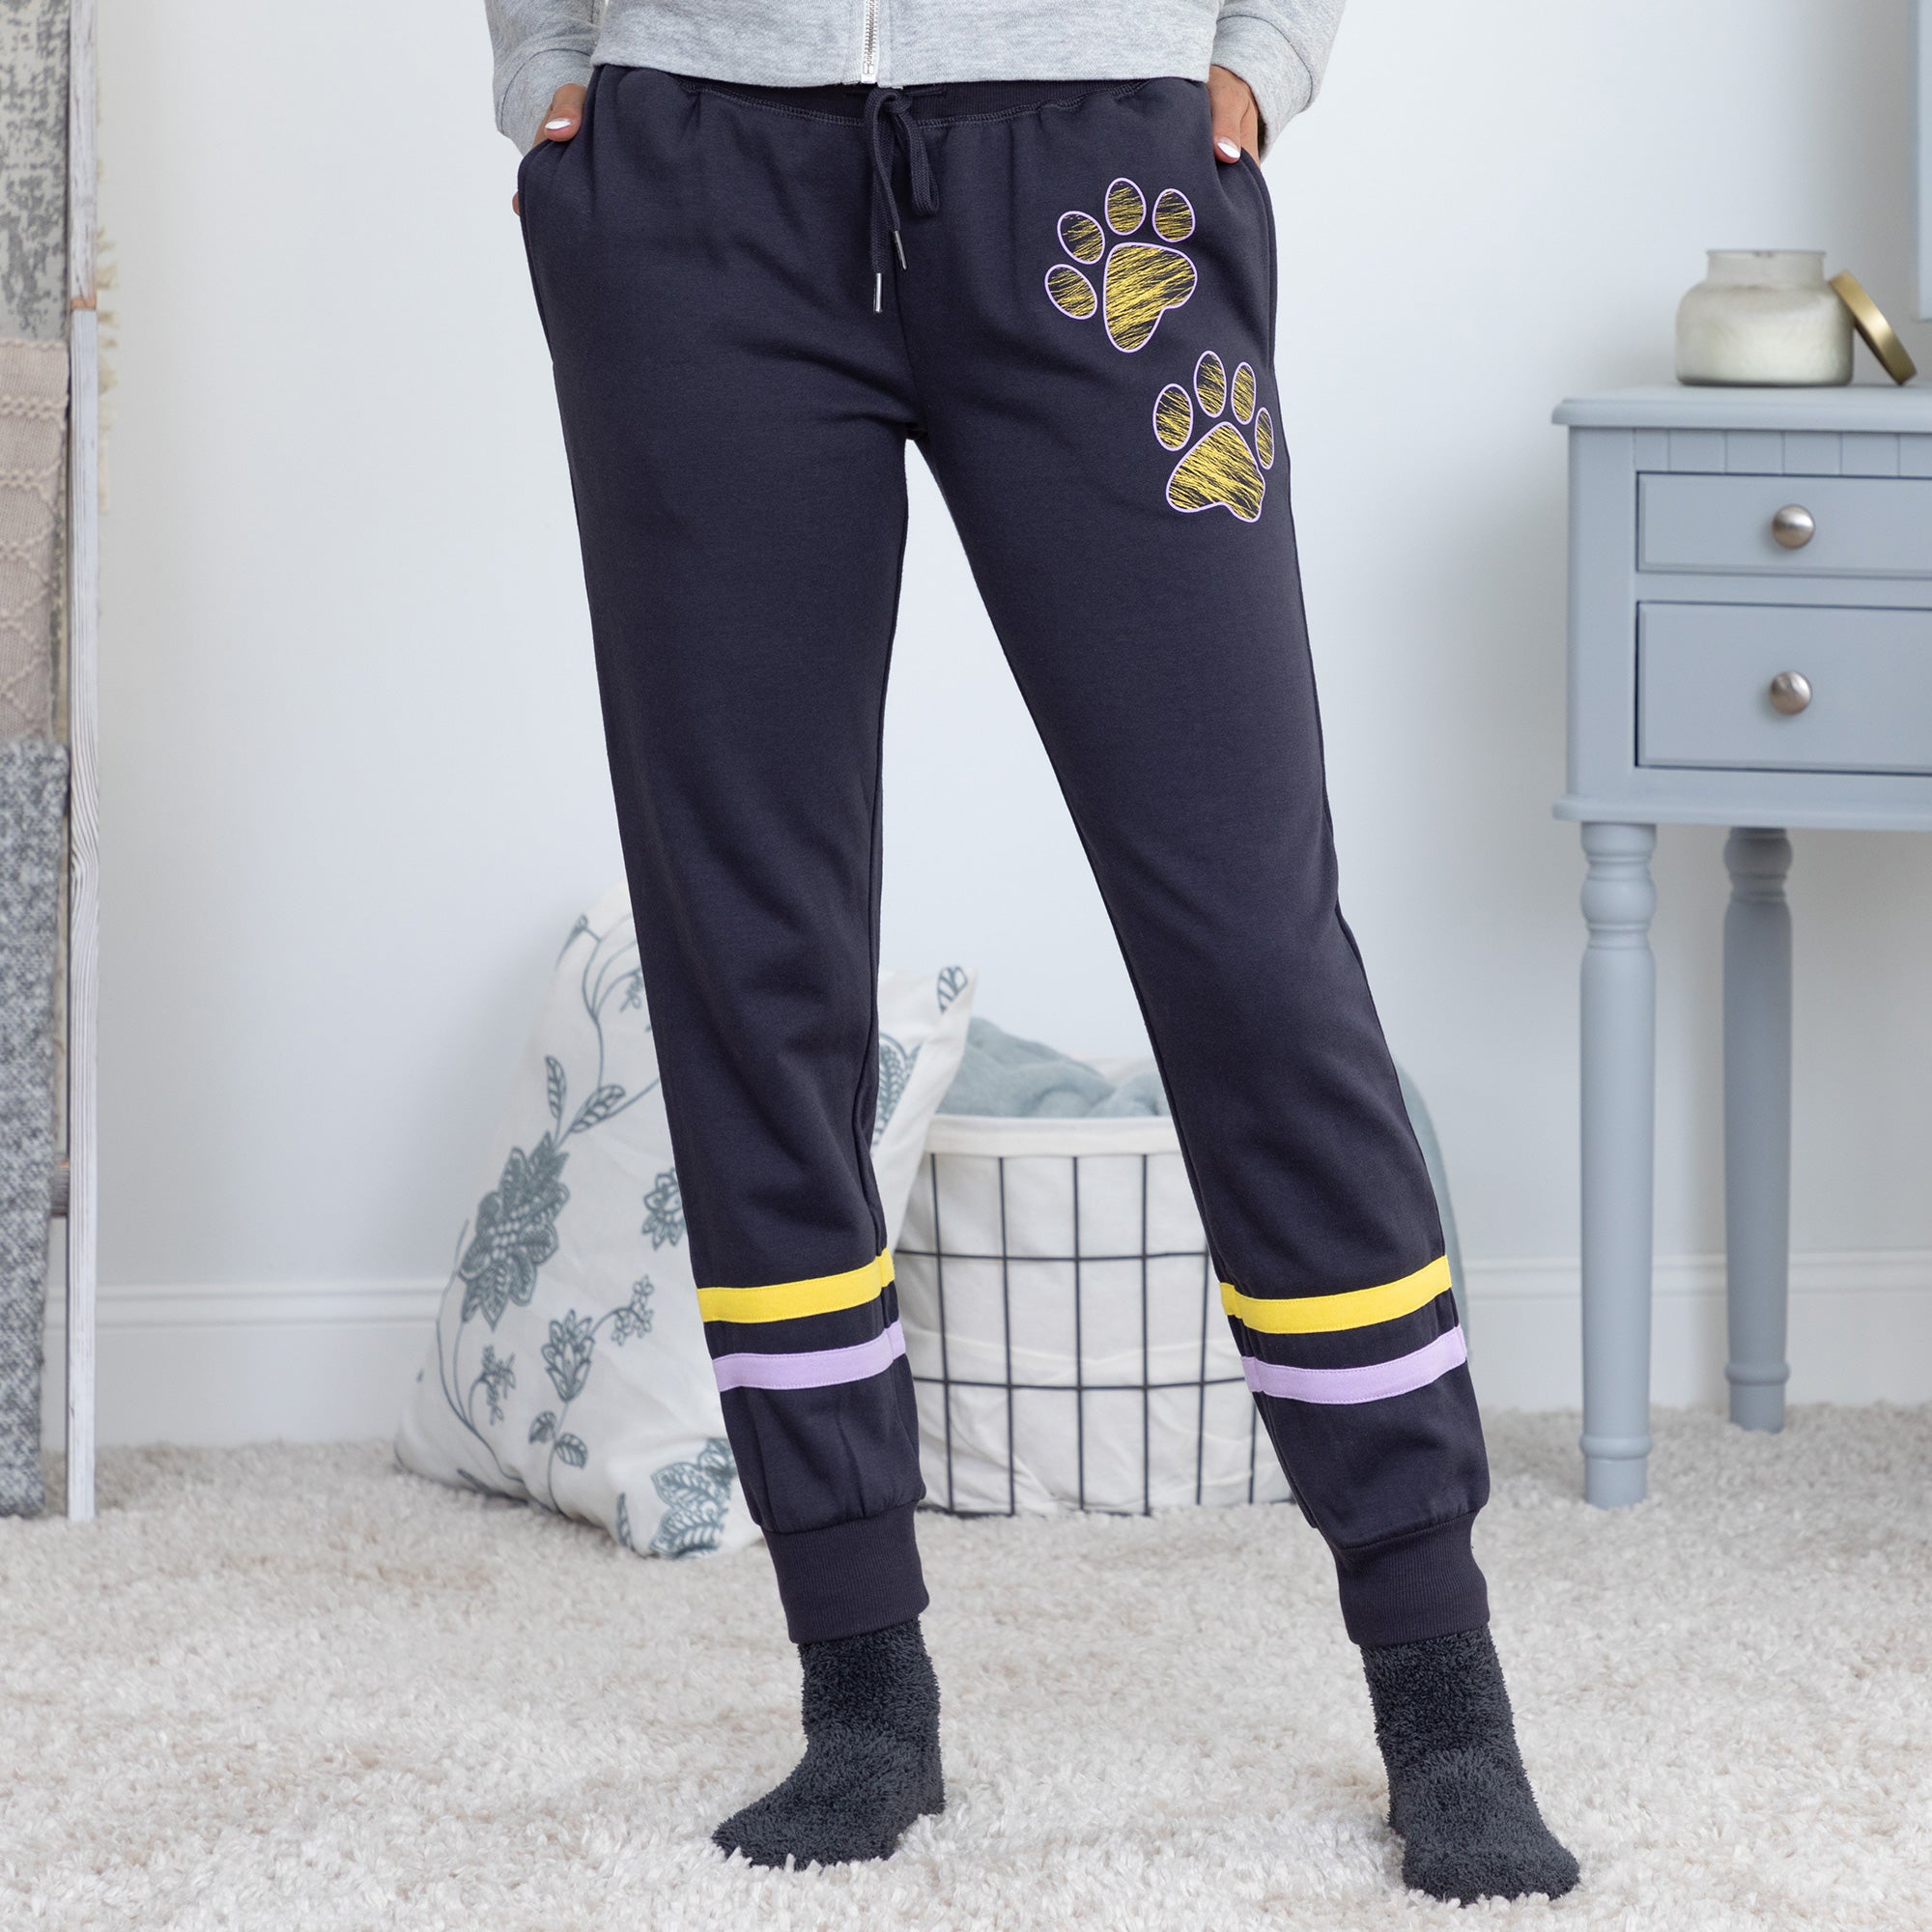 Paw Print Athletic Stripe Sweatpants - Gray - 1X